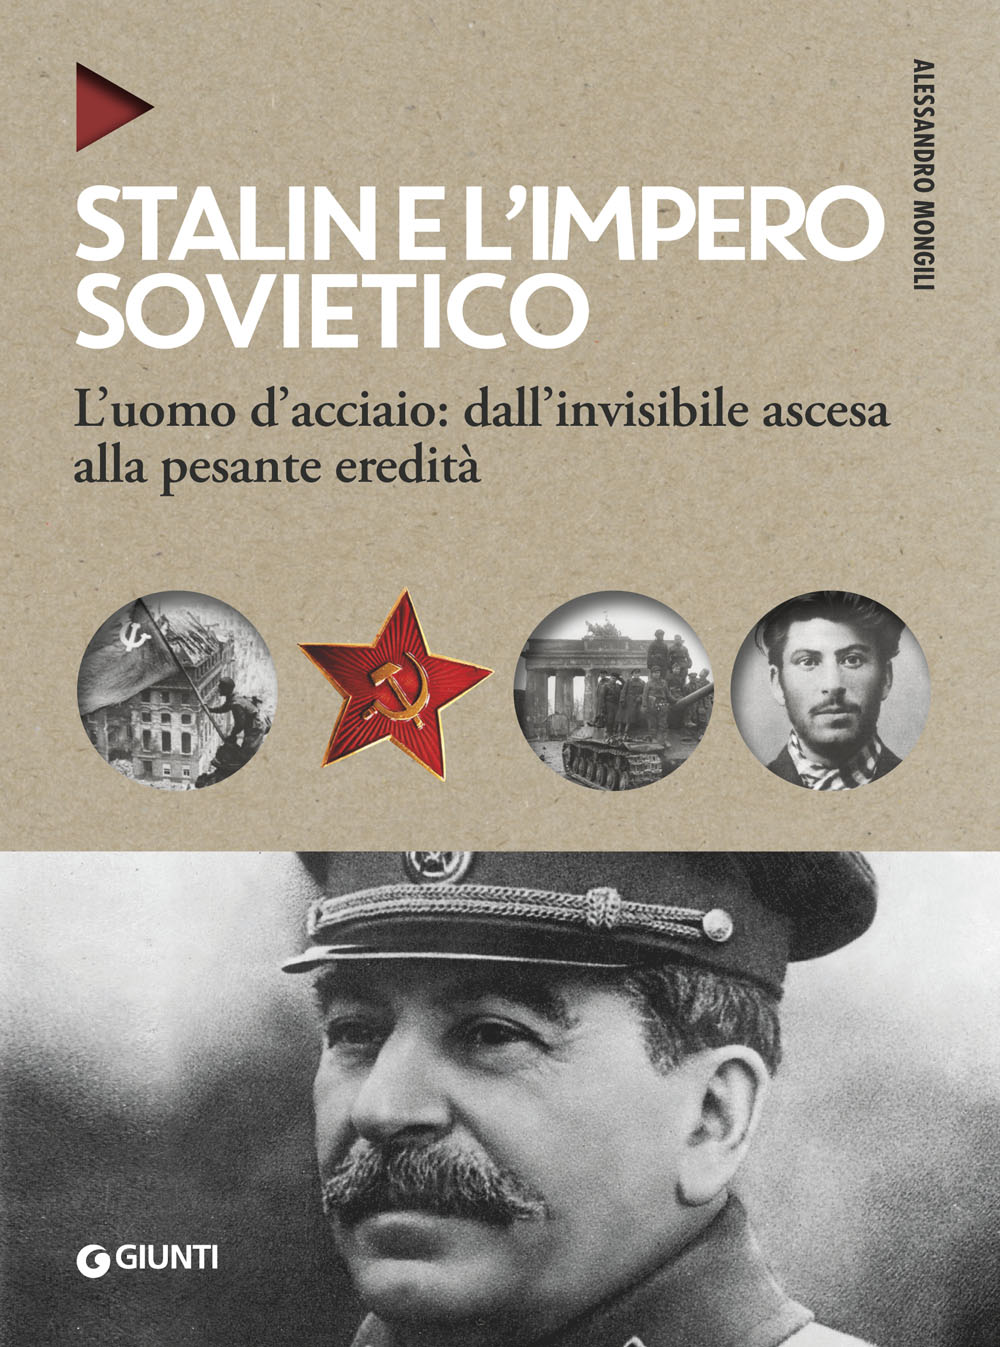 Stalin e l'impero sovietico 